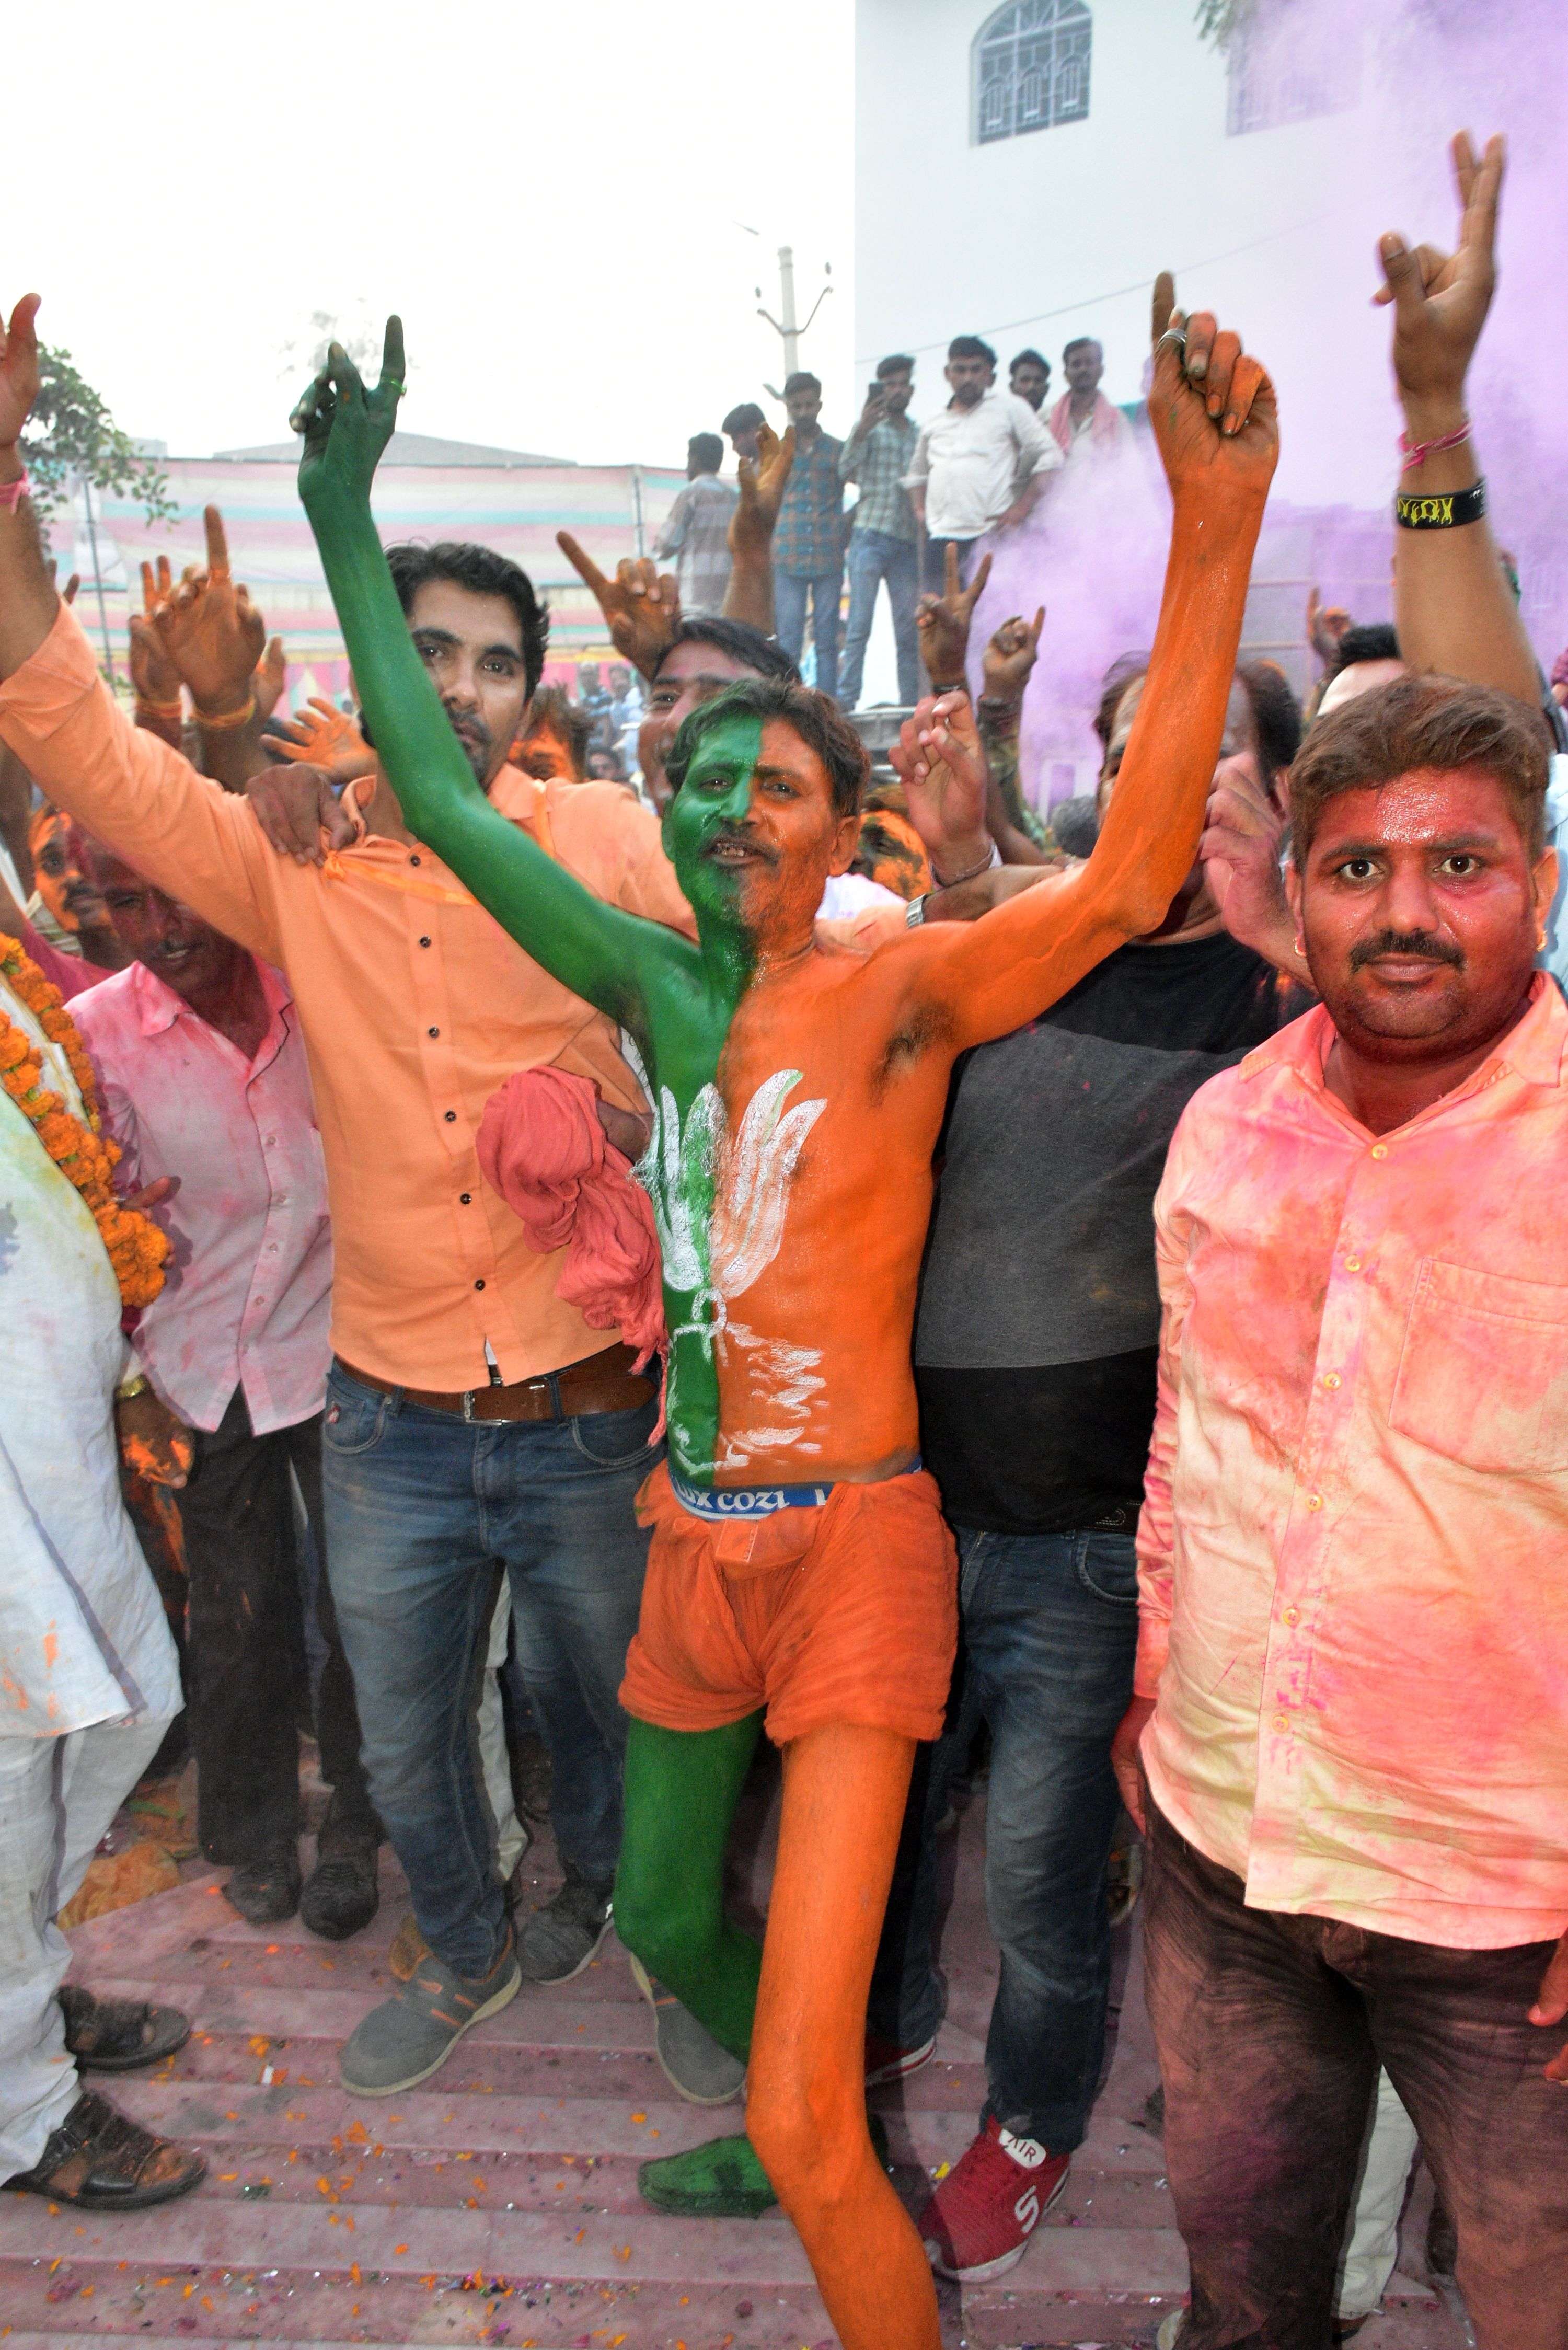 Bikaner : भाजपा कार्यकर्ताओं ने जीत का मनाया जश्न : देखें फोटो